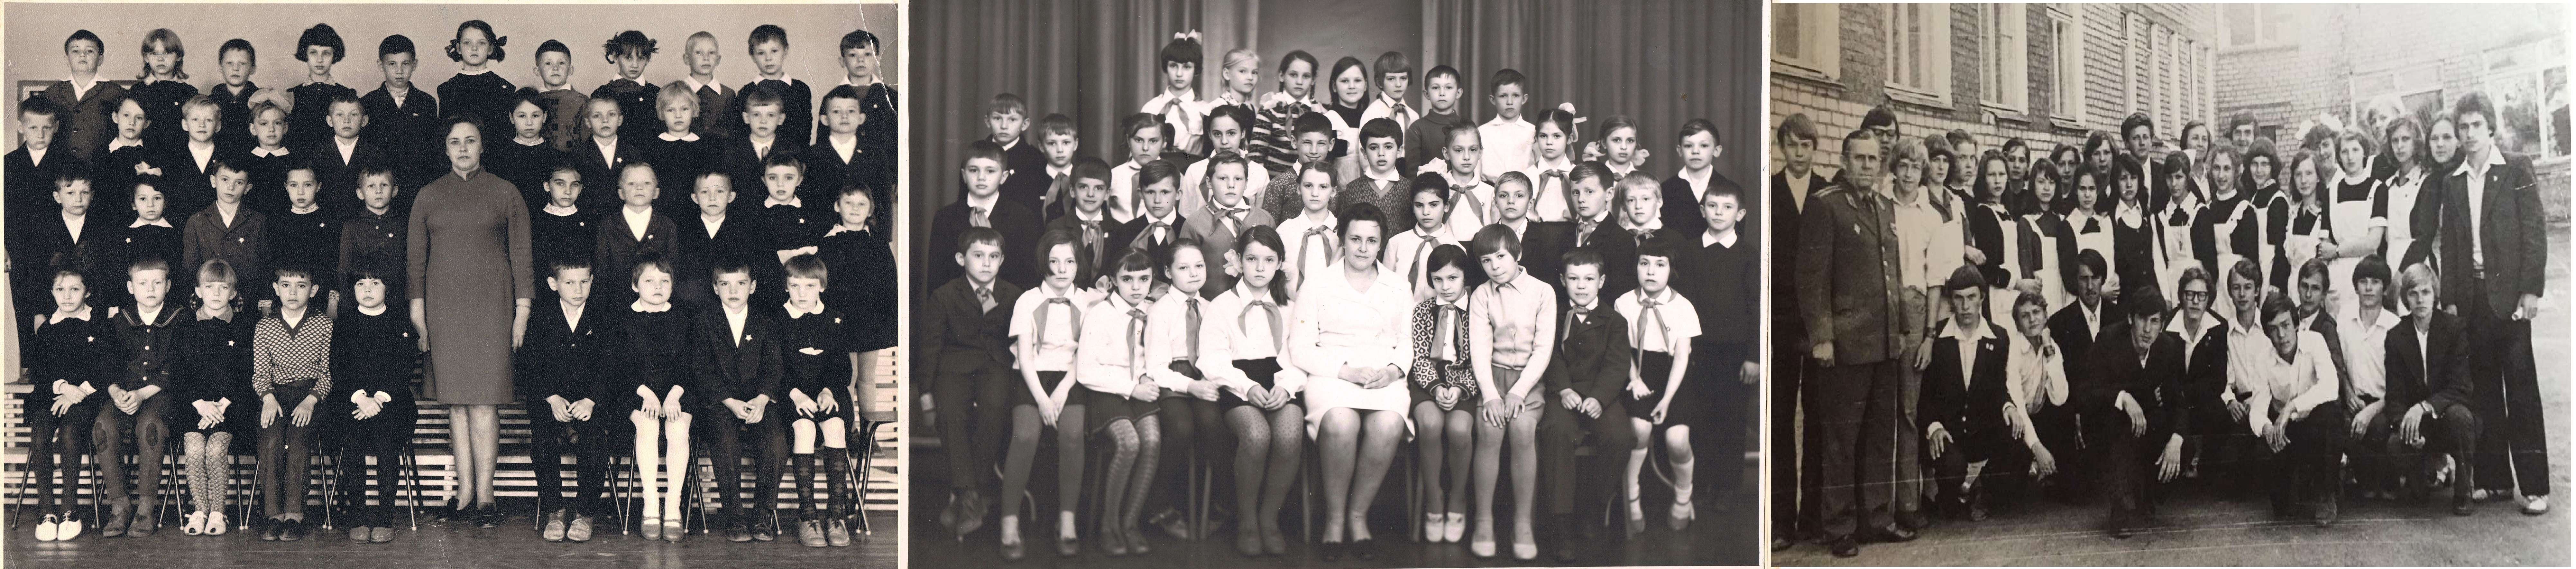 10А класс 1979 года выпуска, школа 25